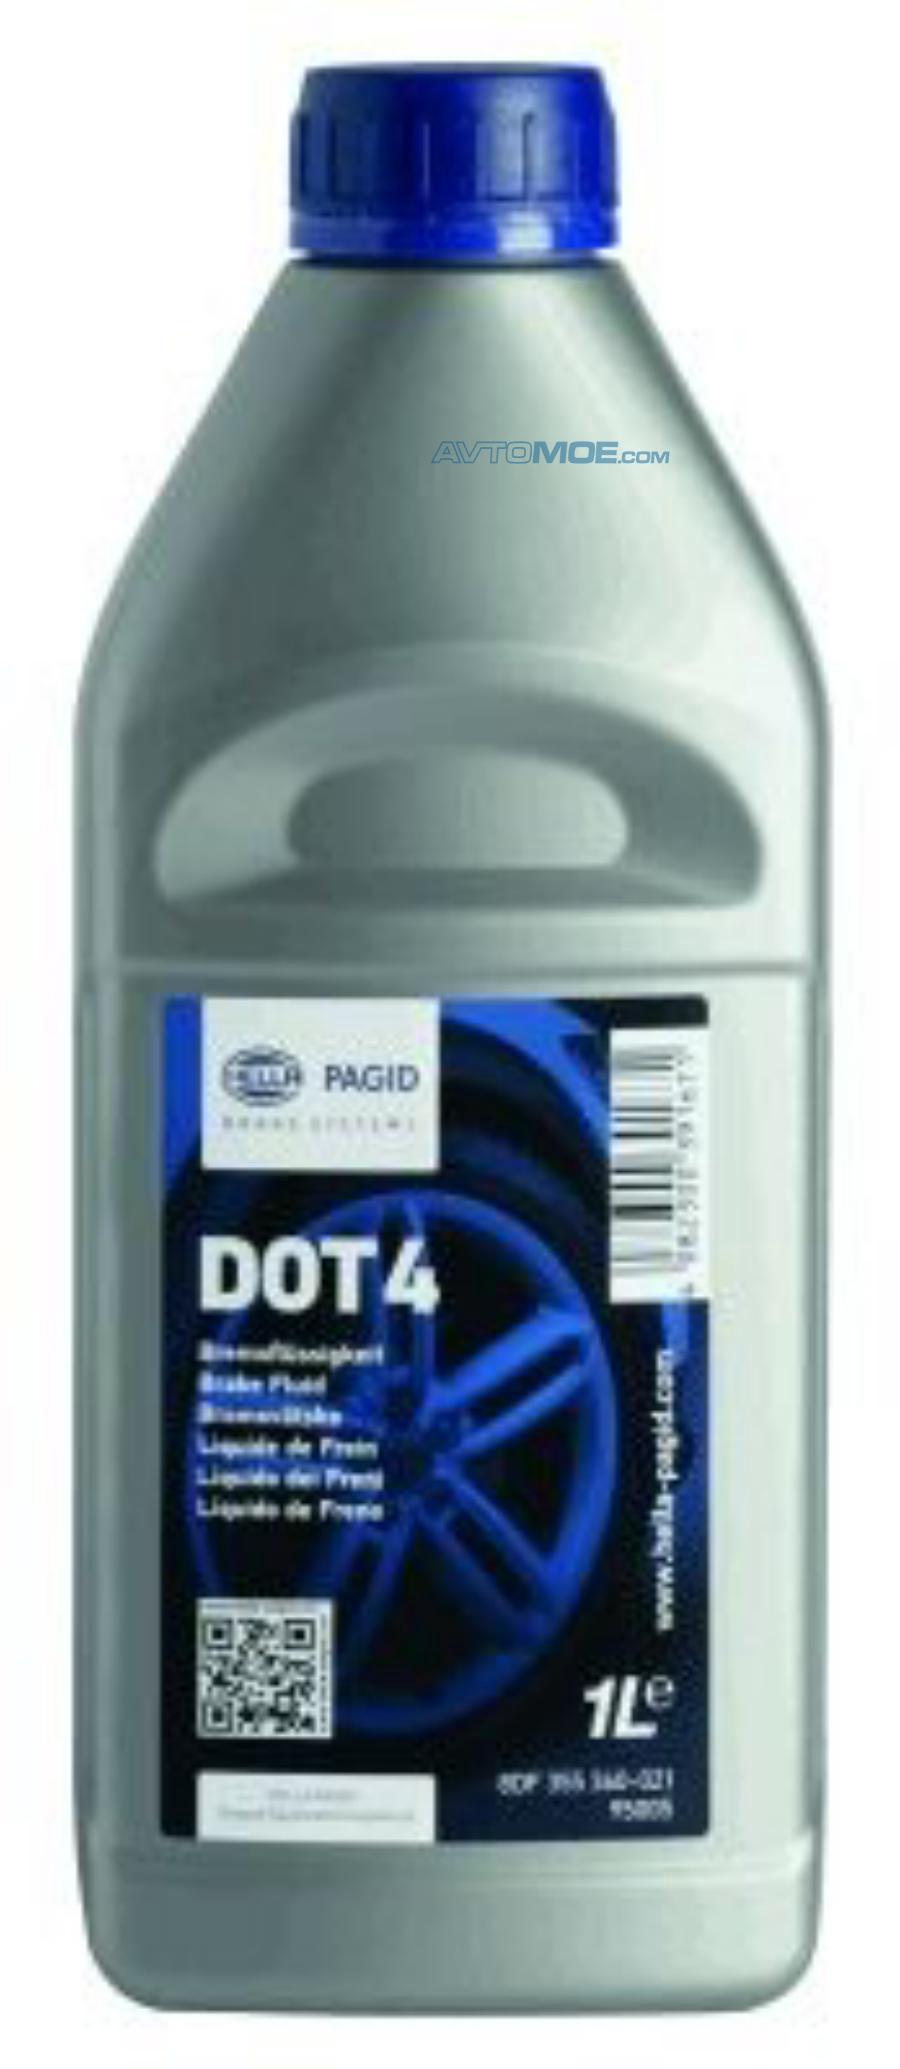 Тормозная жидкость DOT-4, 910гр / 430101H03 по цене 660 руб. с